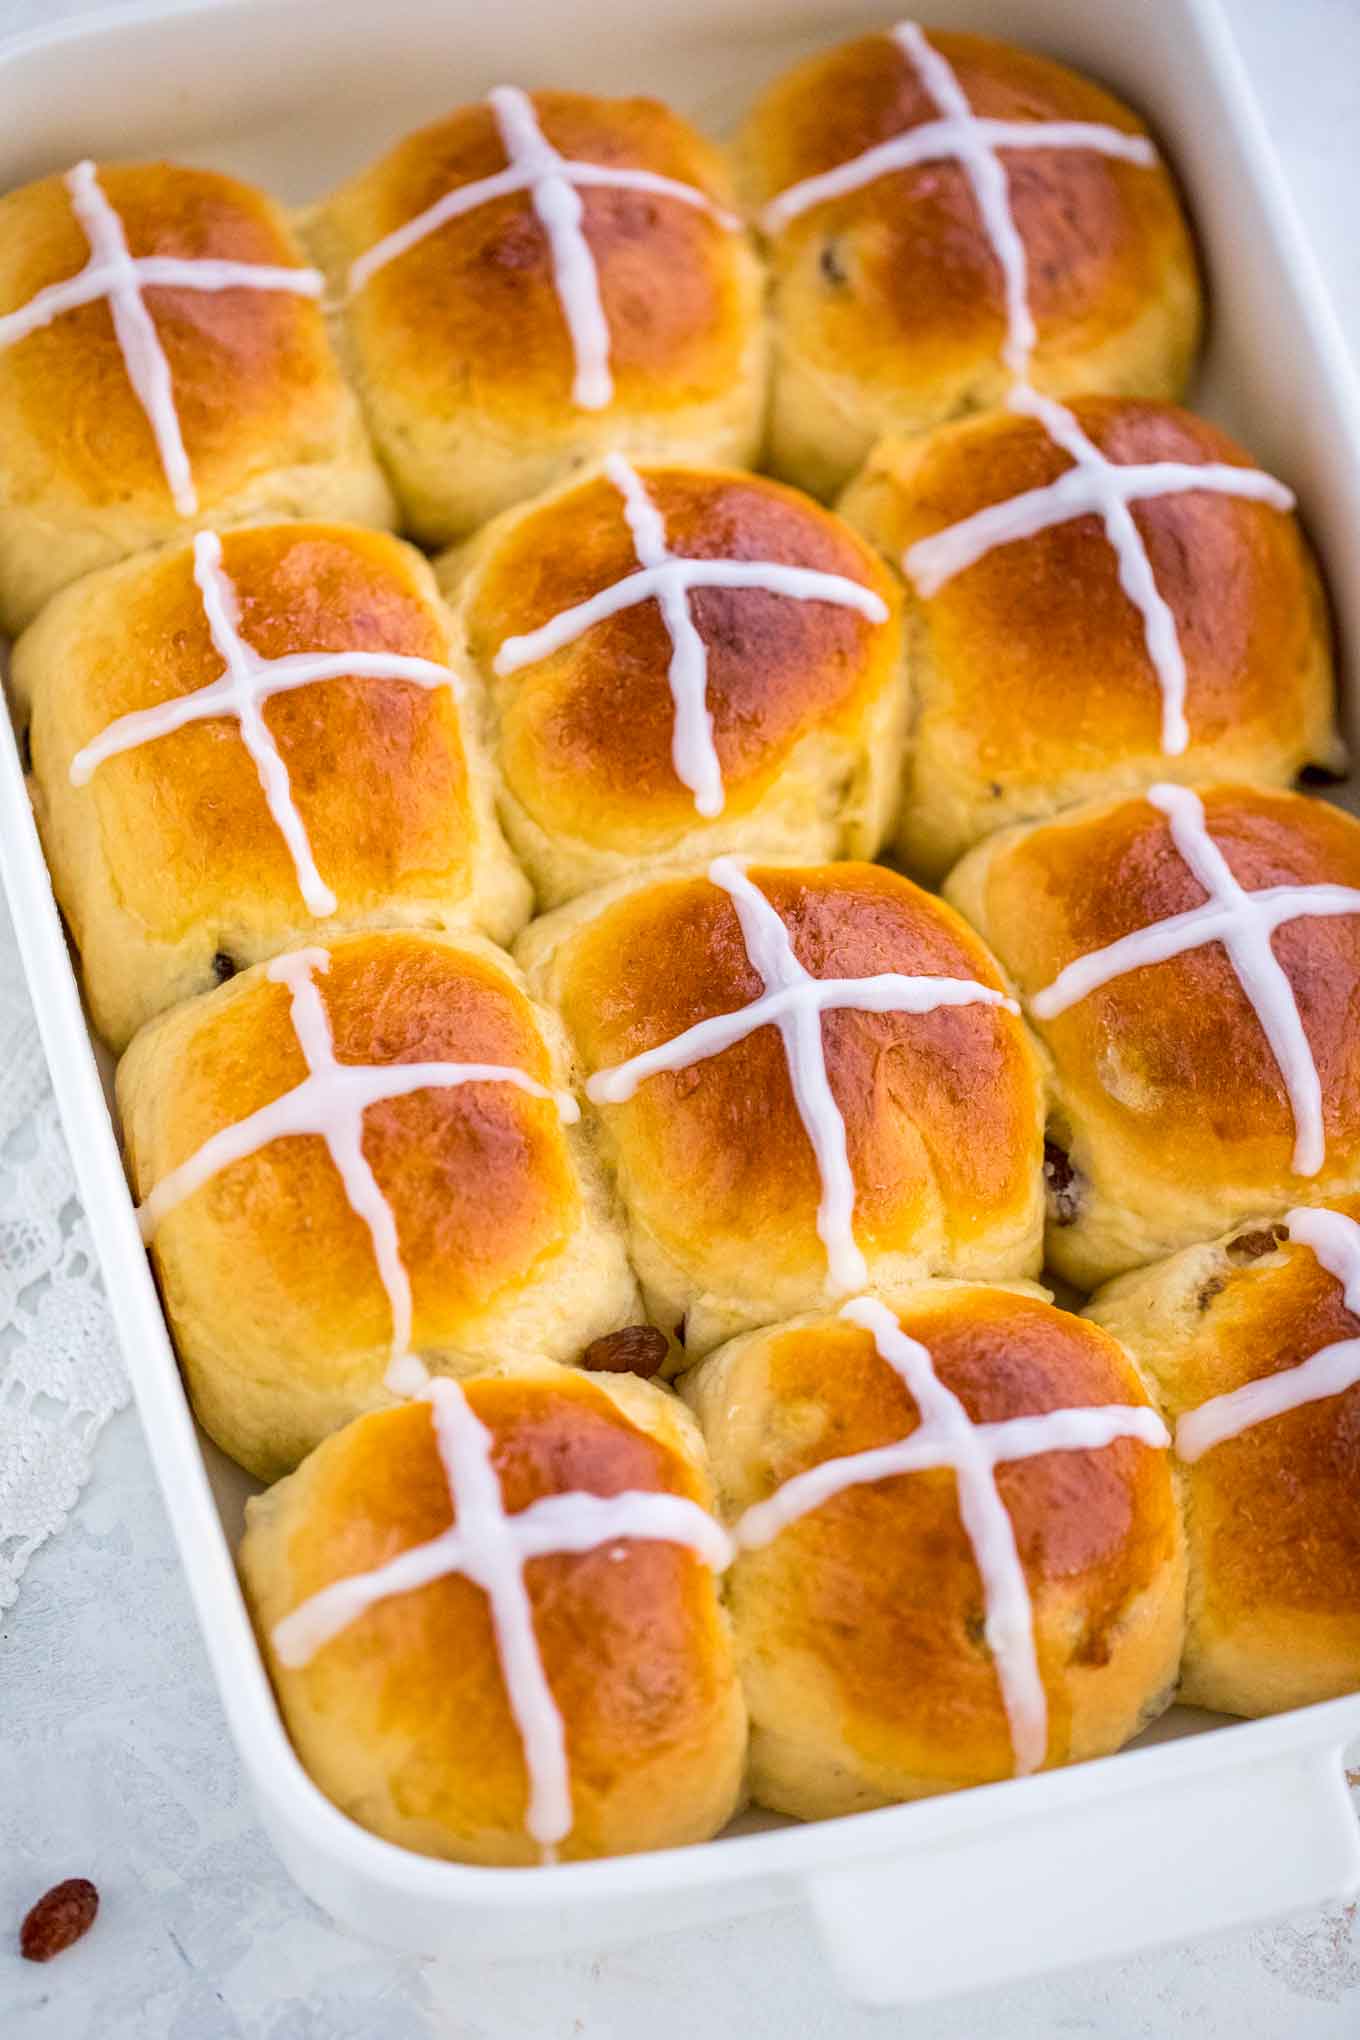 Hot cross buns recipe